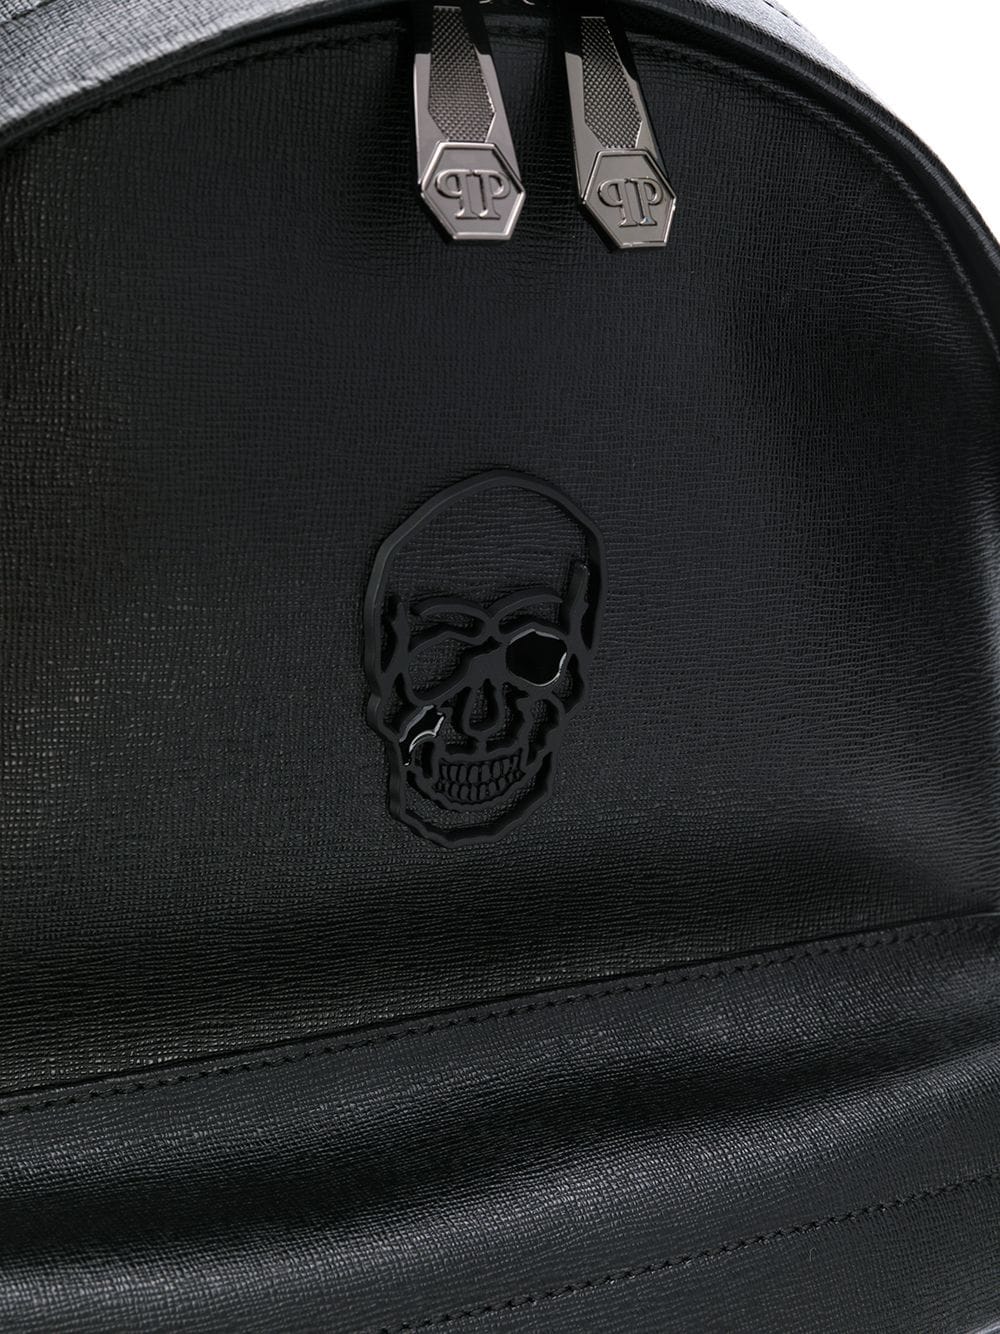 фото Philipp plein рюкзак с декором skull